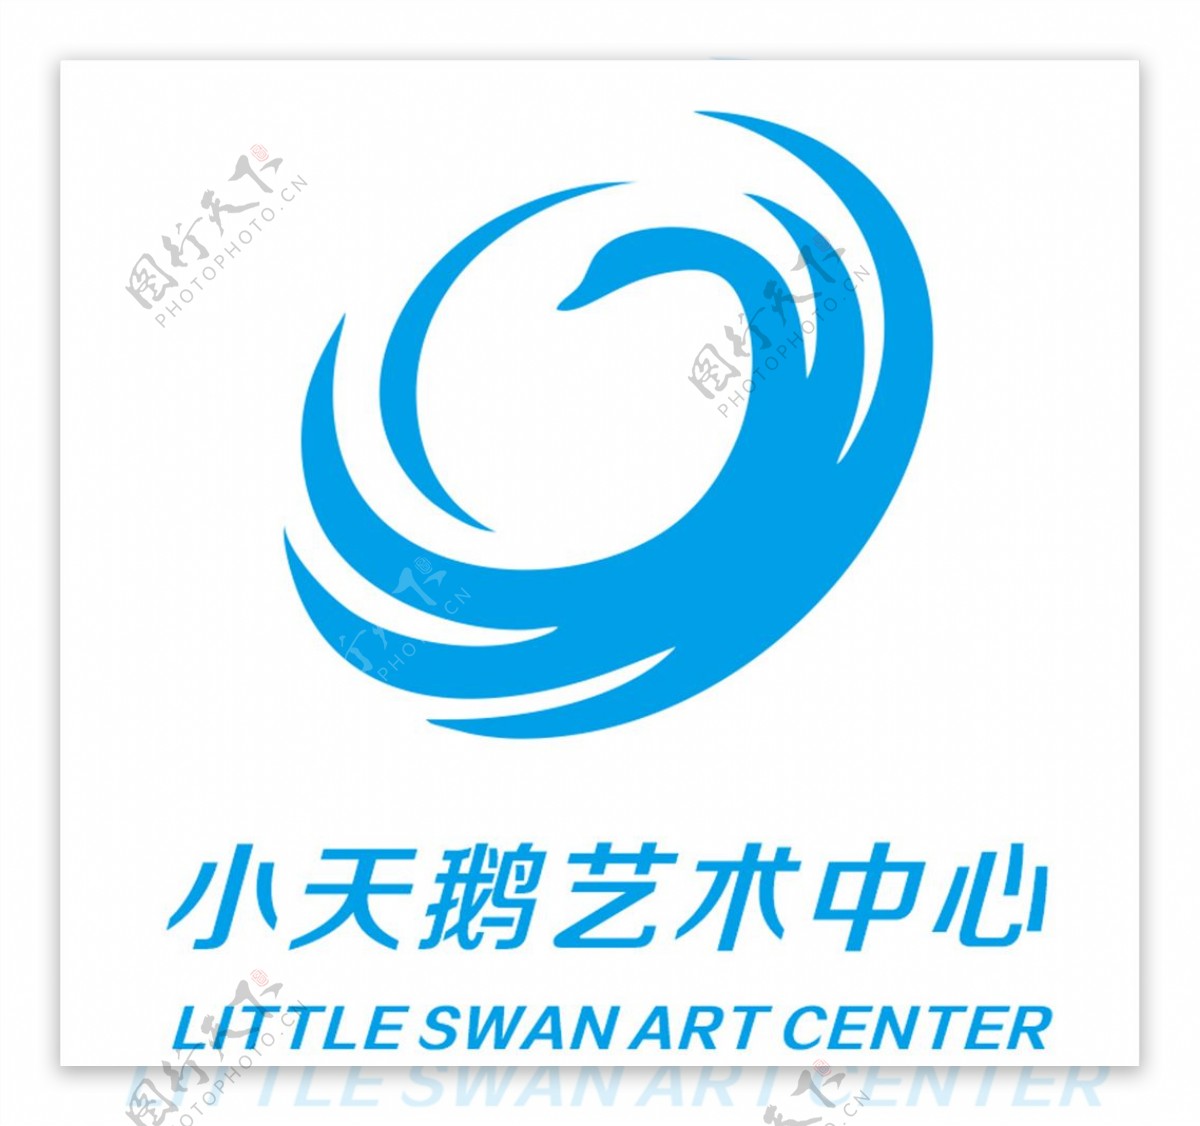 小天鹅艺术中心logo